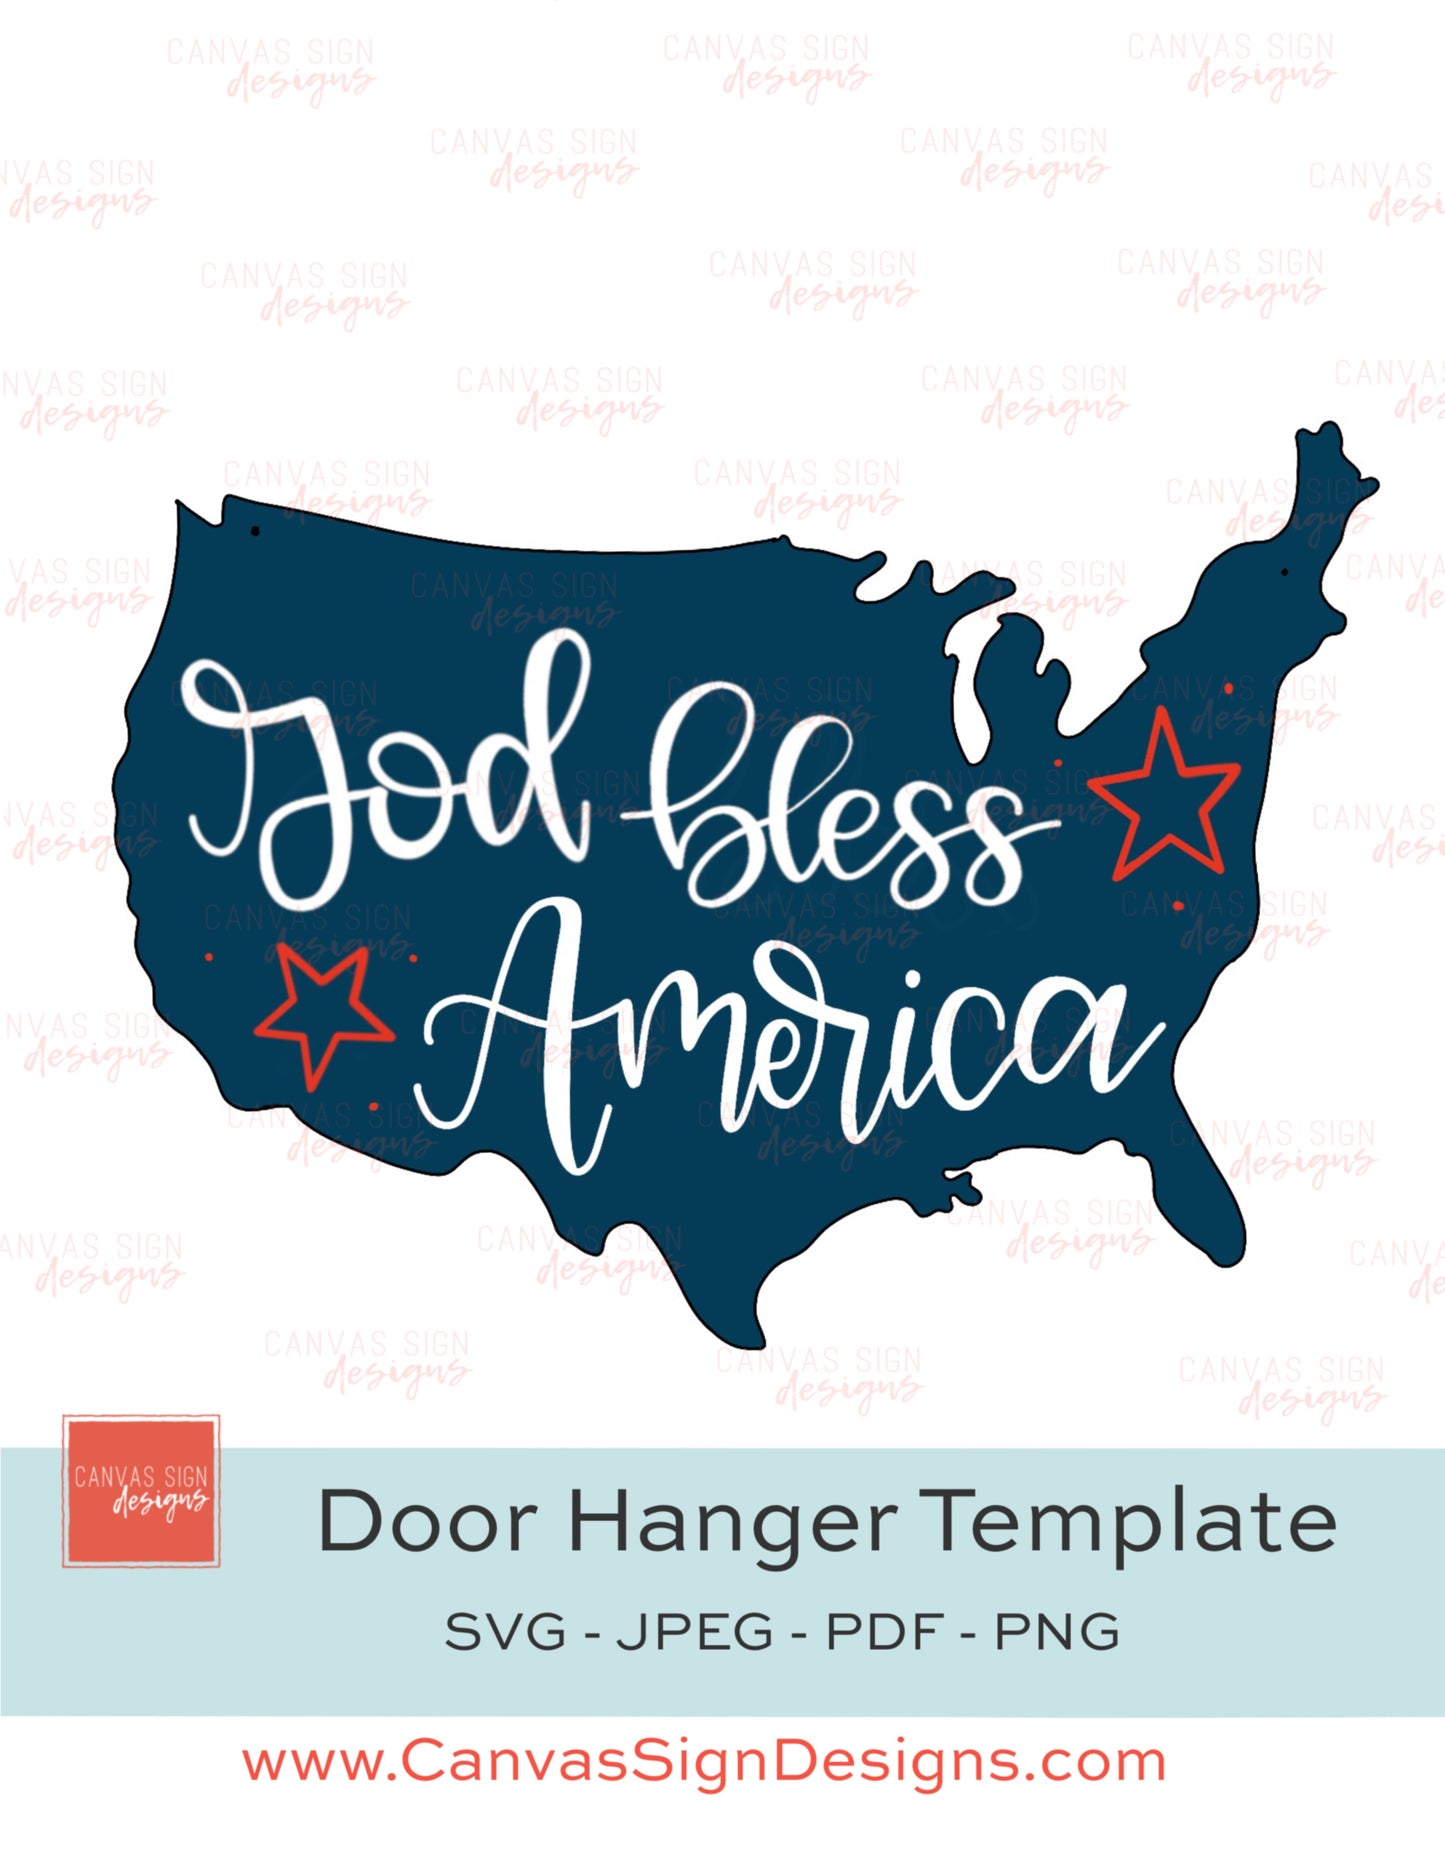 God Bless America Door Hanger Template